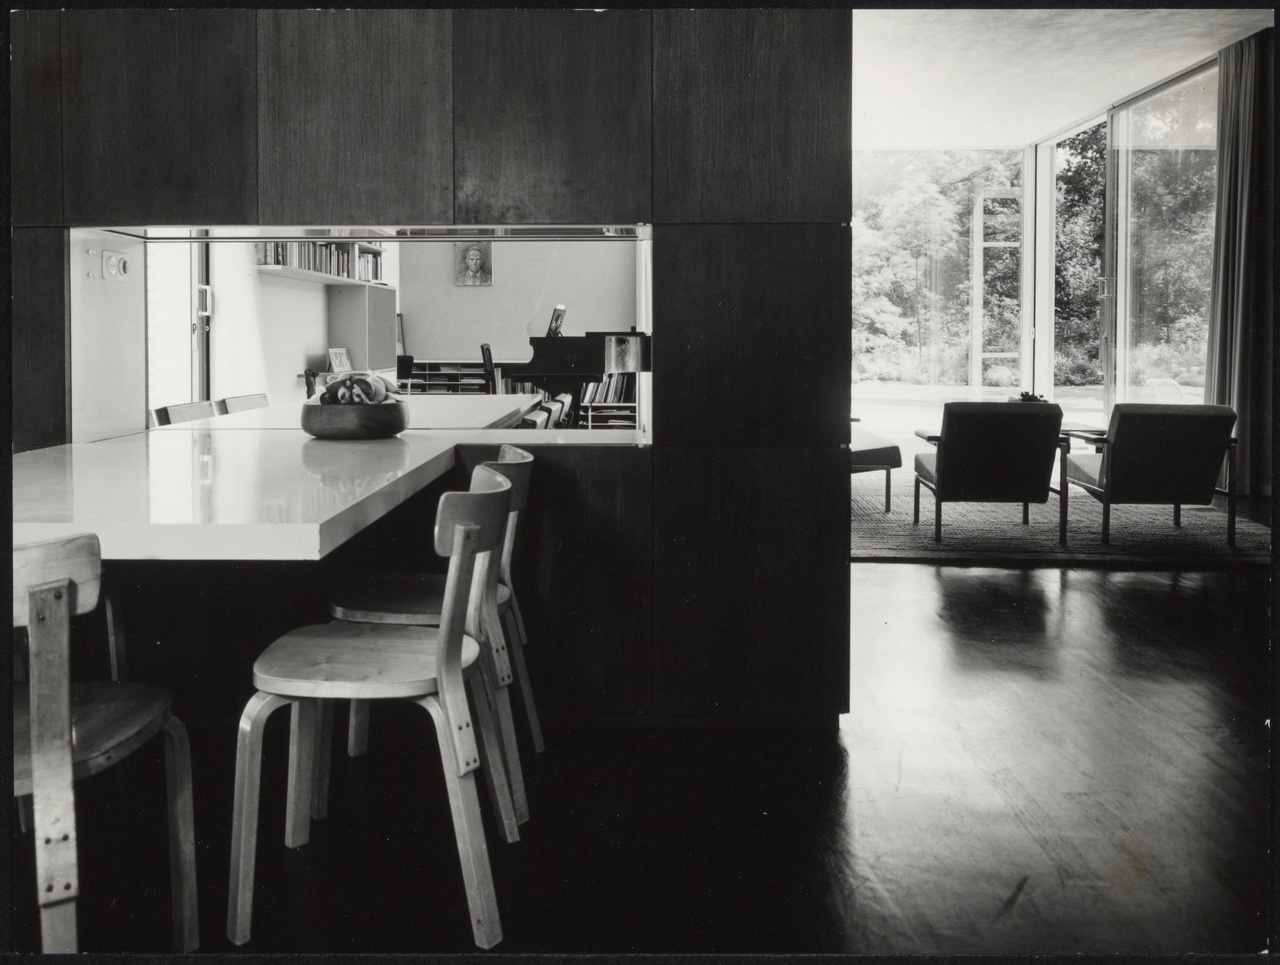 Afbeelding van woning Van Dantzig, Santpoort, 1961, interieur met eettafels en zithoek